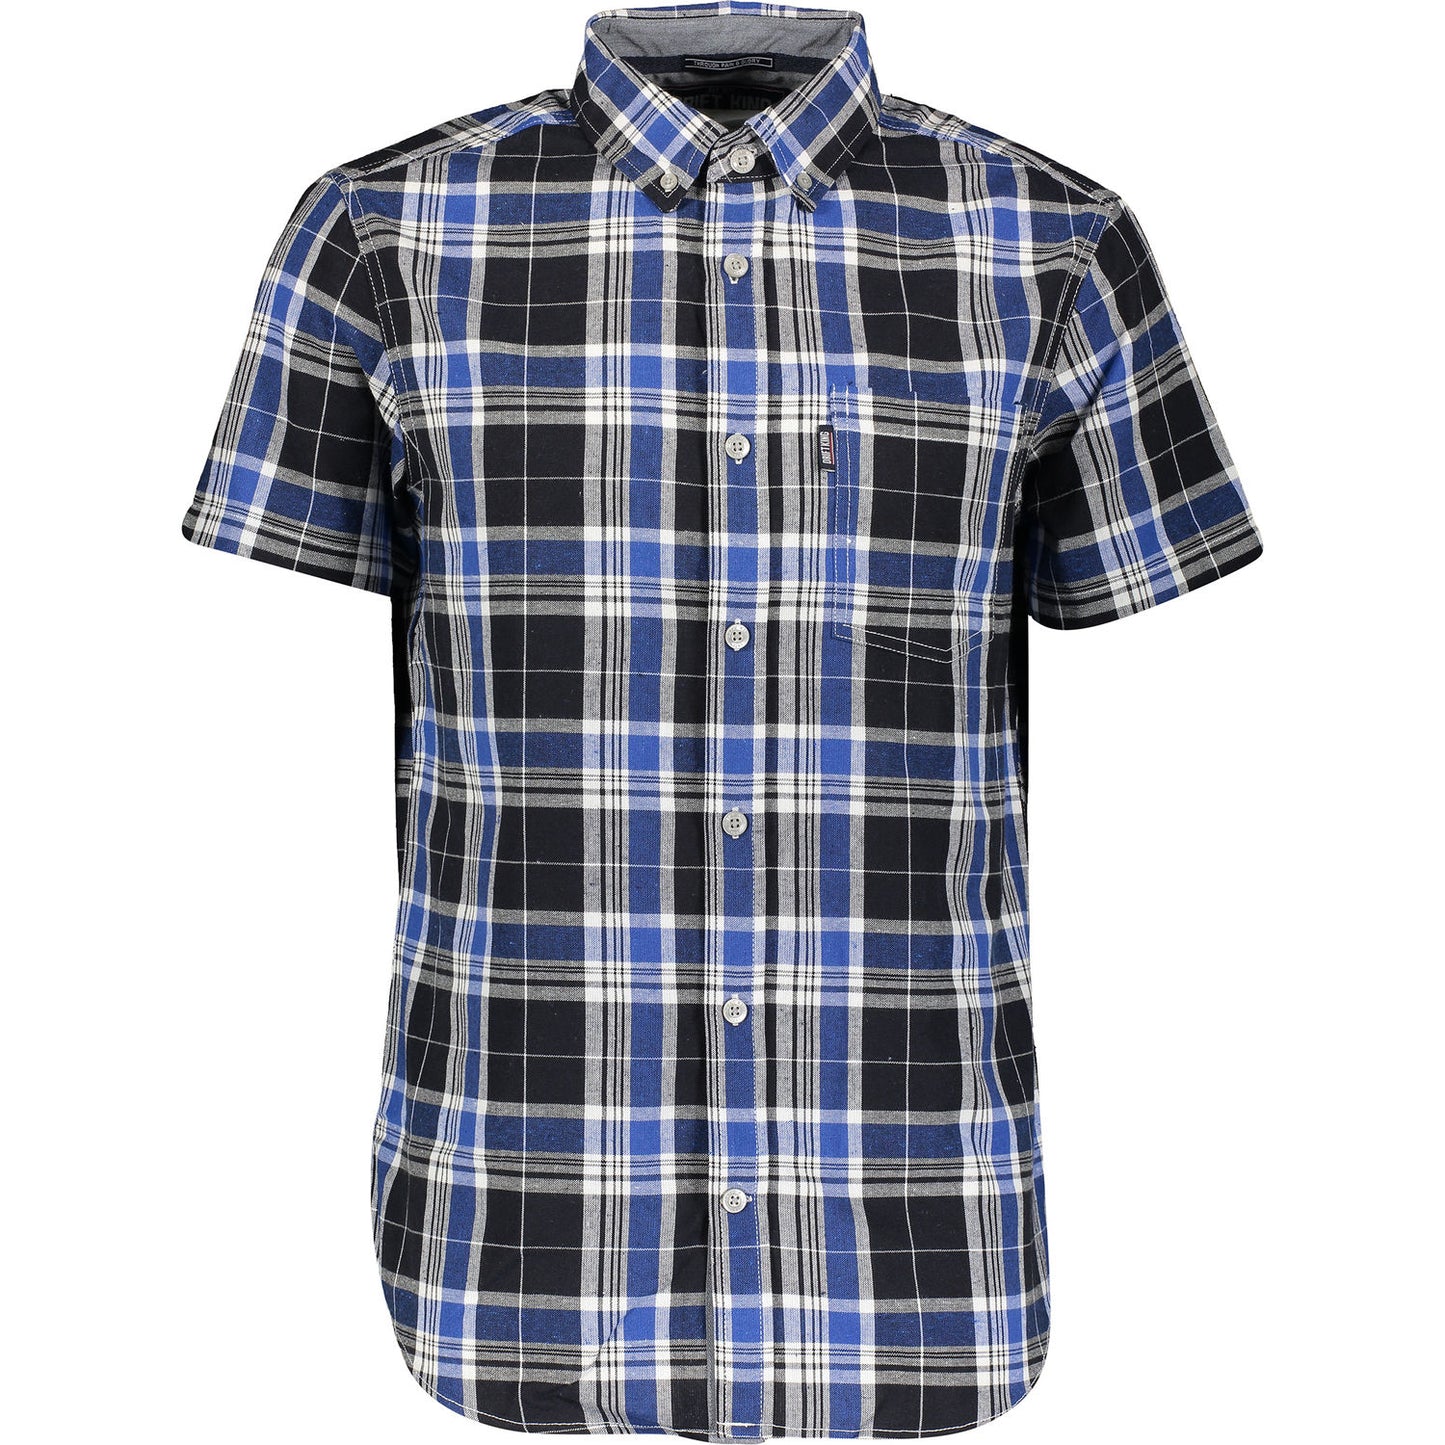 Drift King - Short Sleeve Check Shirt - LabelledUp.com